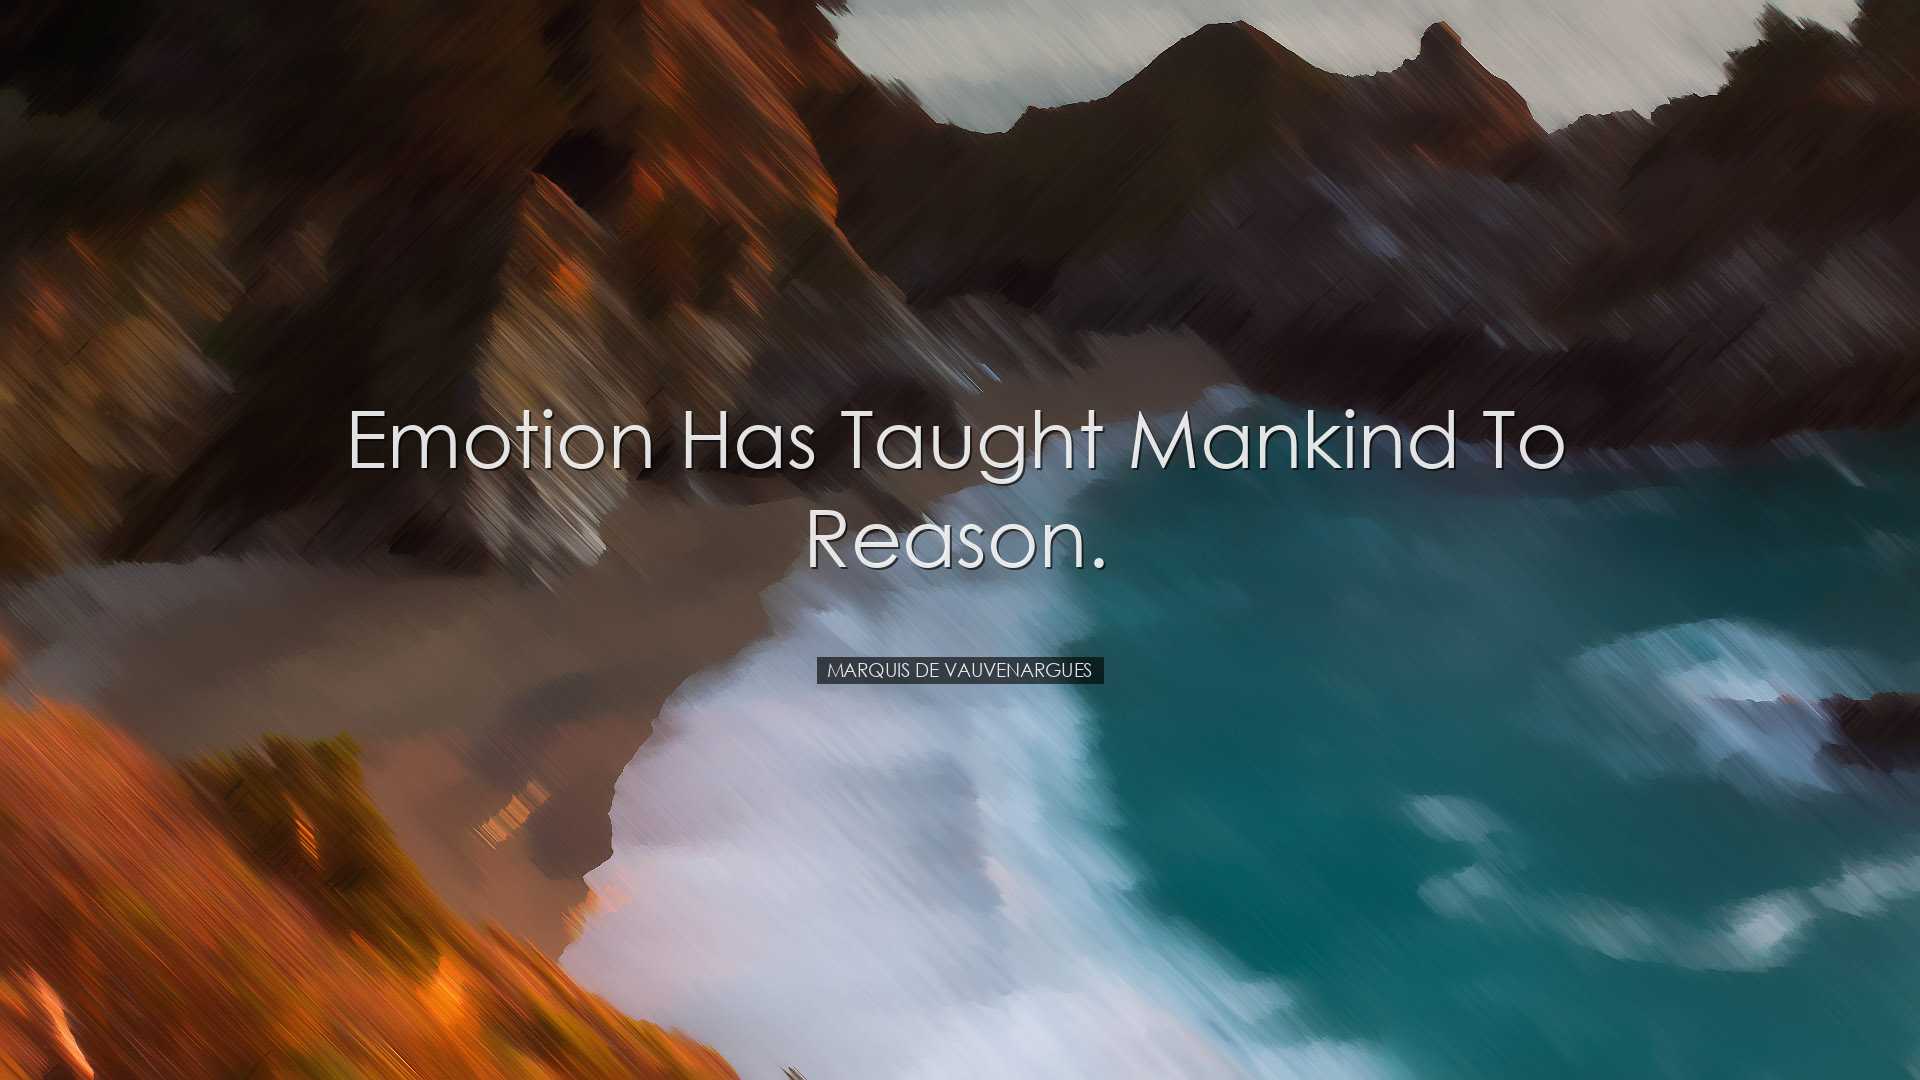 Emotion has taught mankind to reason. - Marquis de Vauvenargues